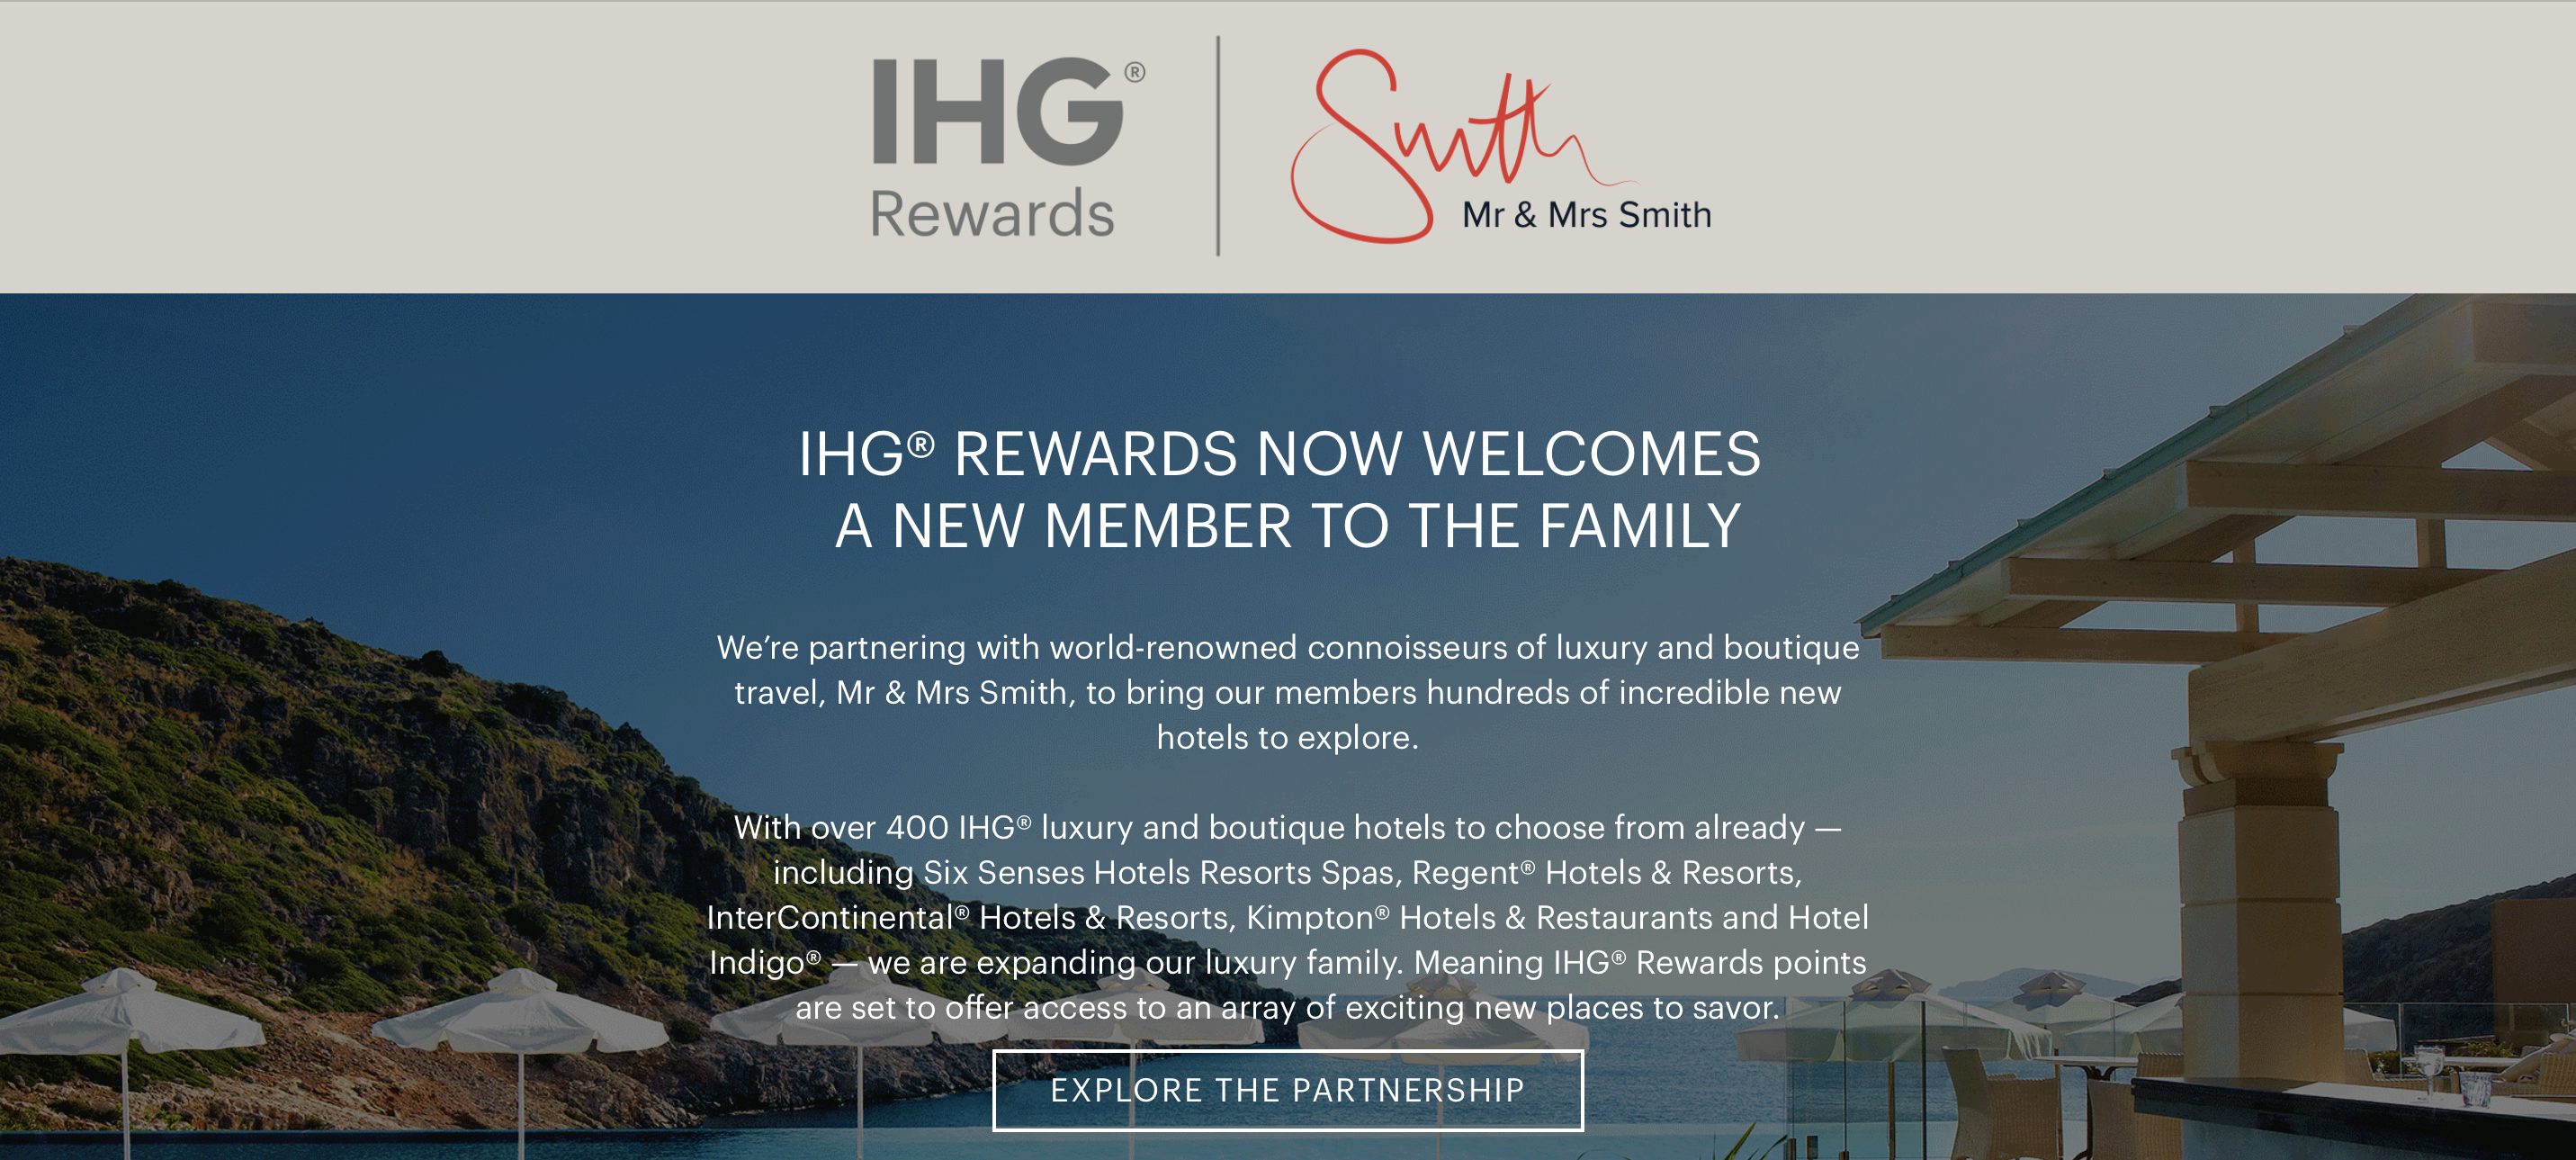 Mr & Mrs Smithのホテルがインターコンチネンタルホテルズ(IHG)のポイントで予約可能に